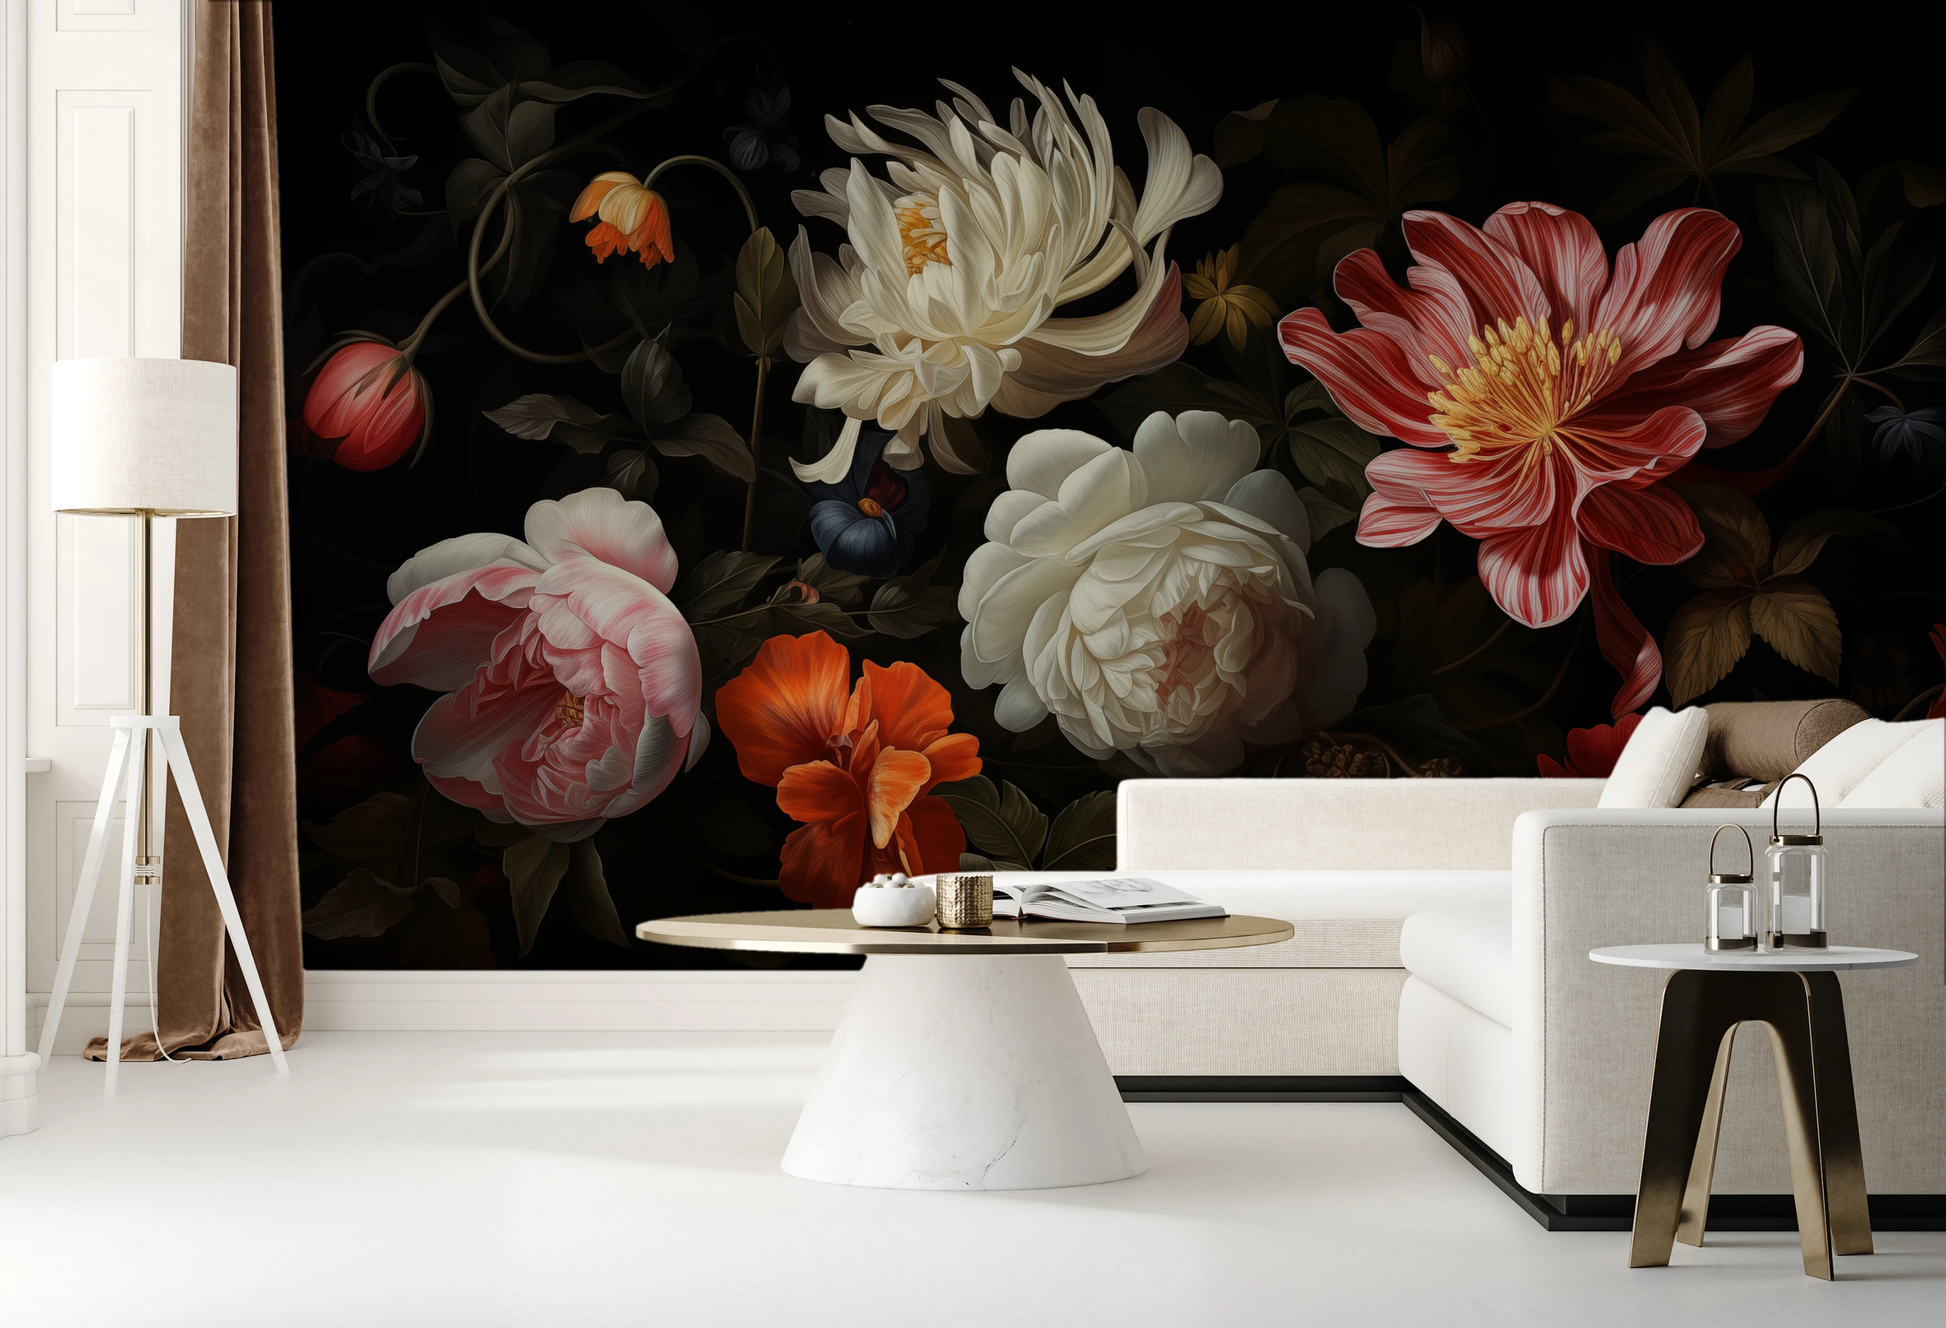 Wzór fototapety artystycznej o nazwie Dutch Floral Masterpiece pokazanej w aranżacji wnętrza.